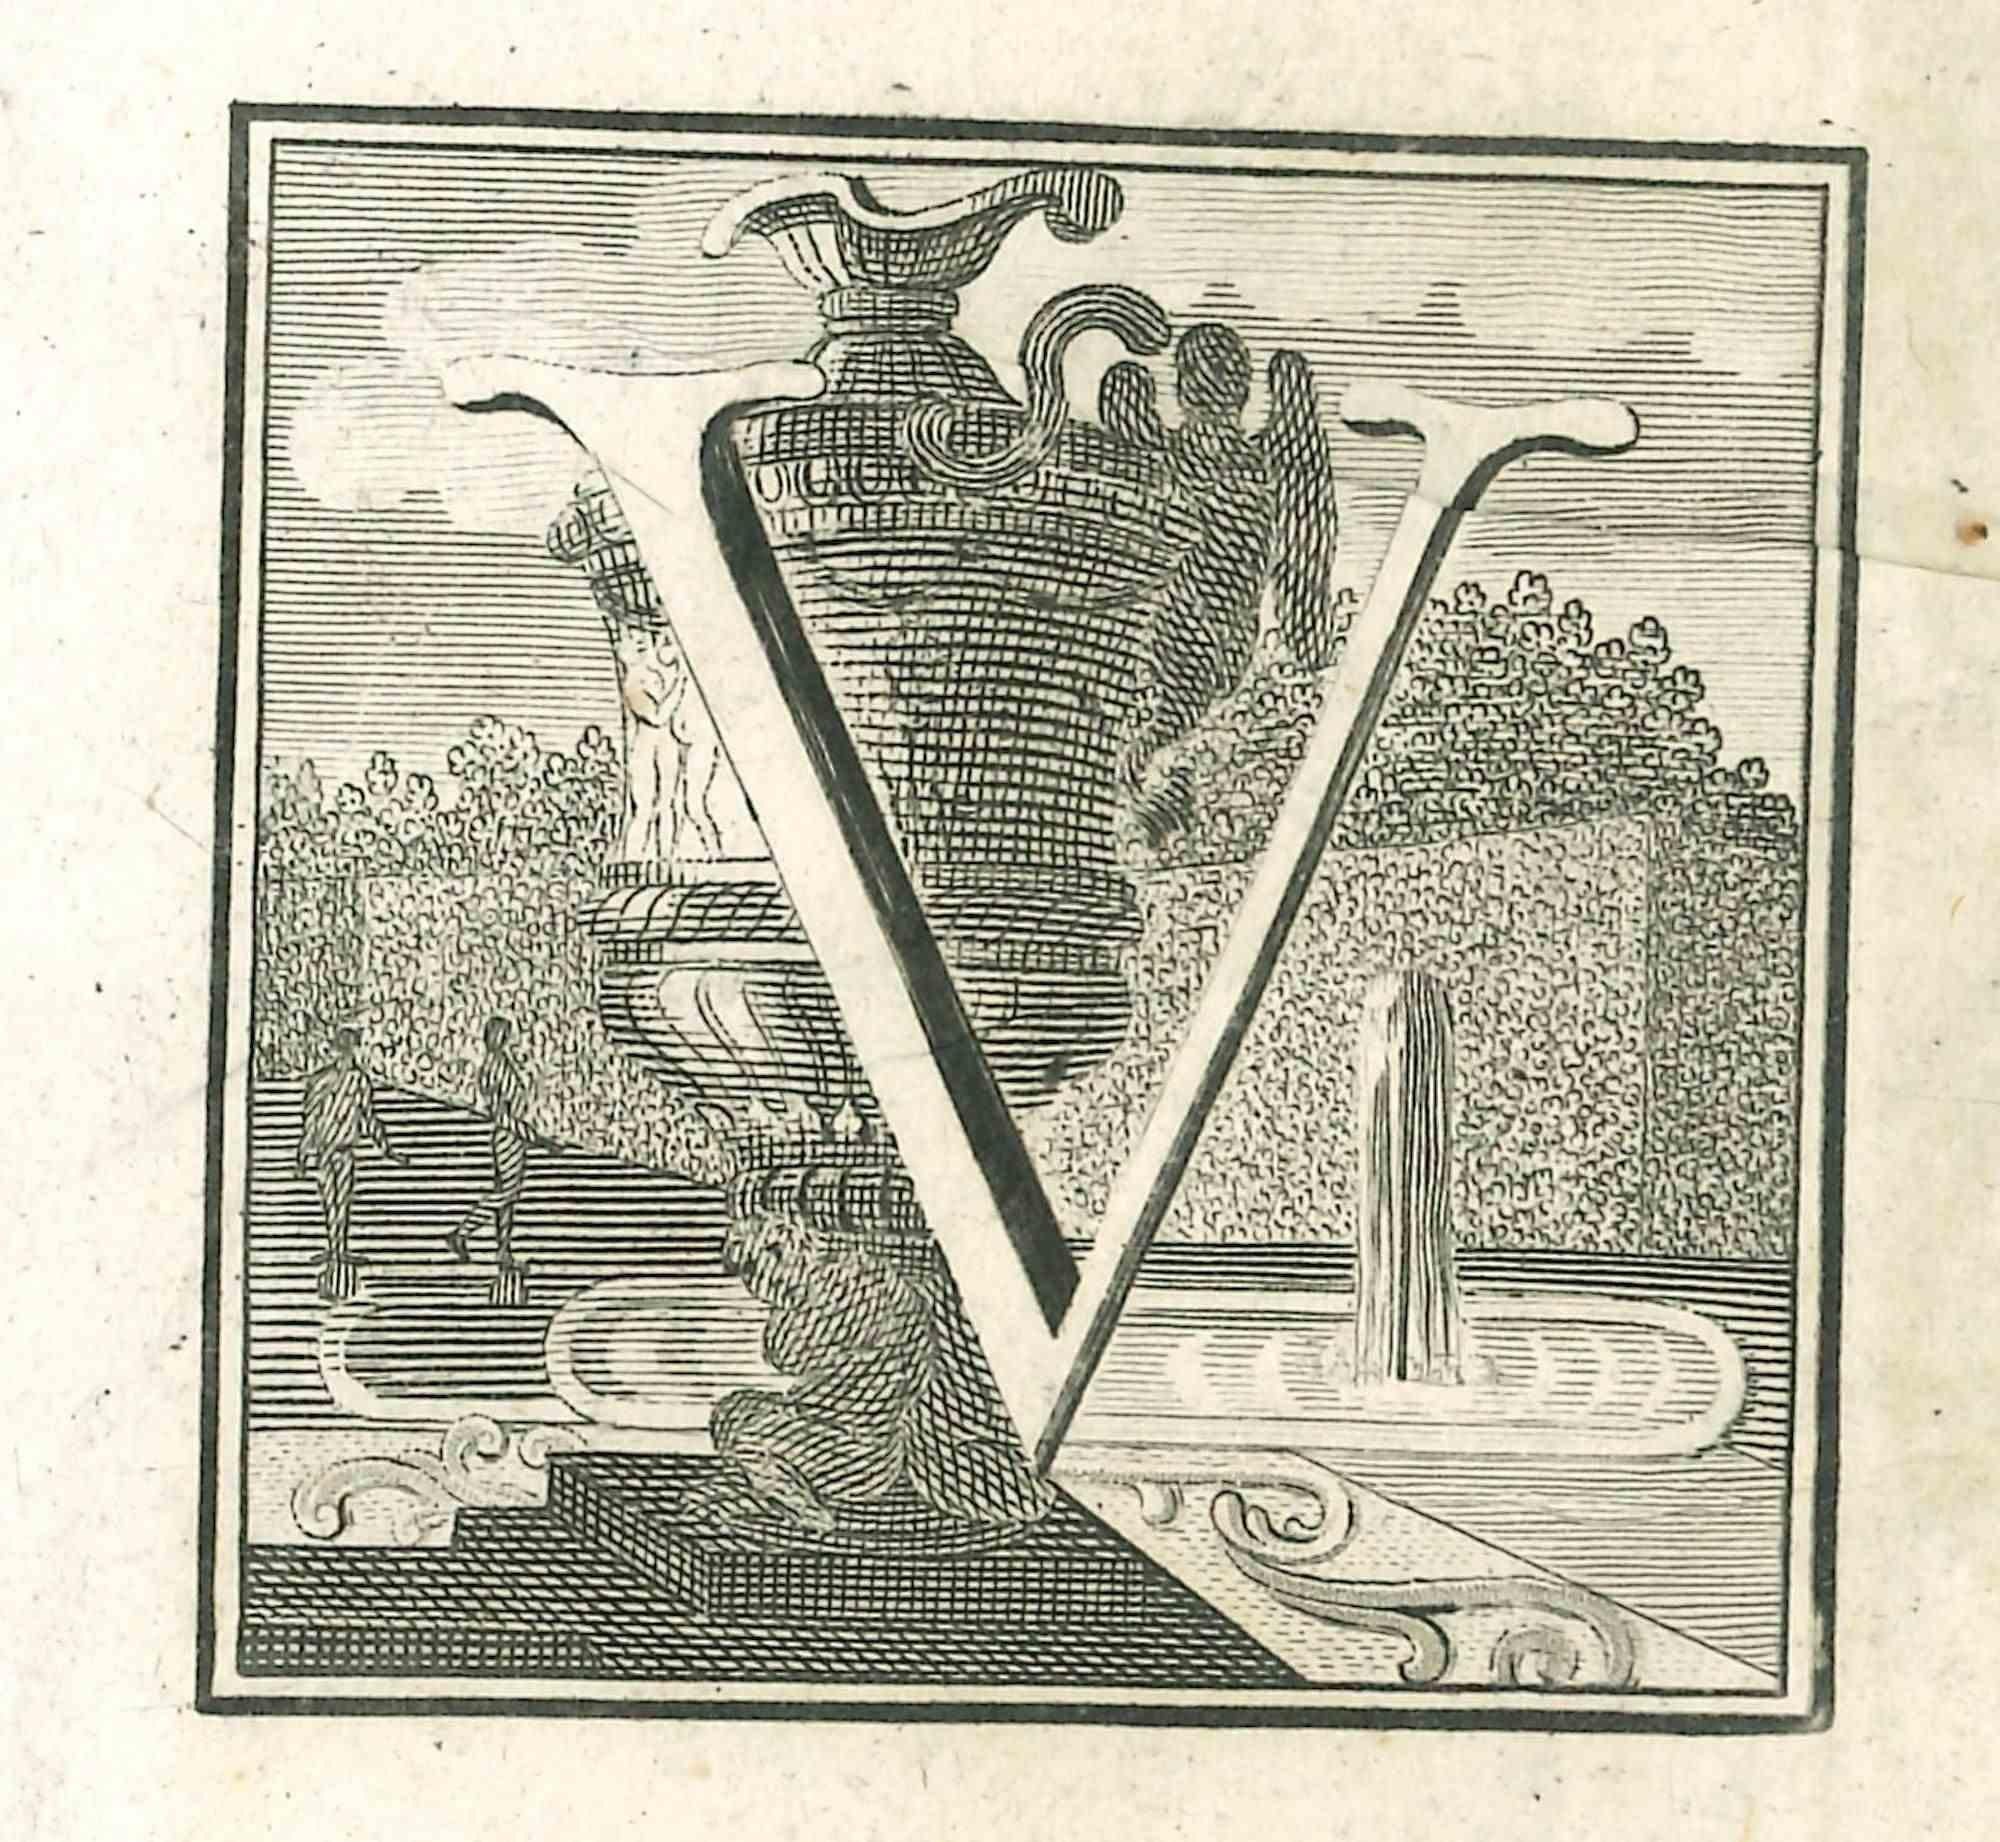 Lettre de l'alphabet V,  de la série "Antiquités d'Herculanum", est une gravure sur papier réalisée par Luigi Vanvitelli au 18ème siècle.

Bon état avec quelques pliures.

La gravure appartient à la suite d'estampes "Antiquités d'Herculanum